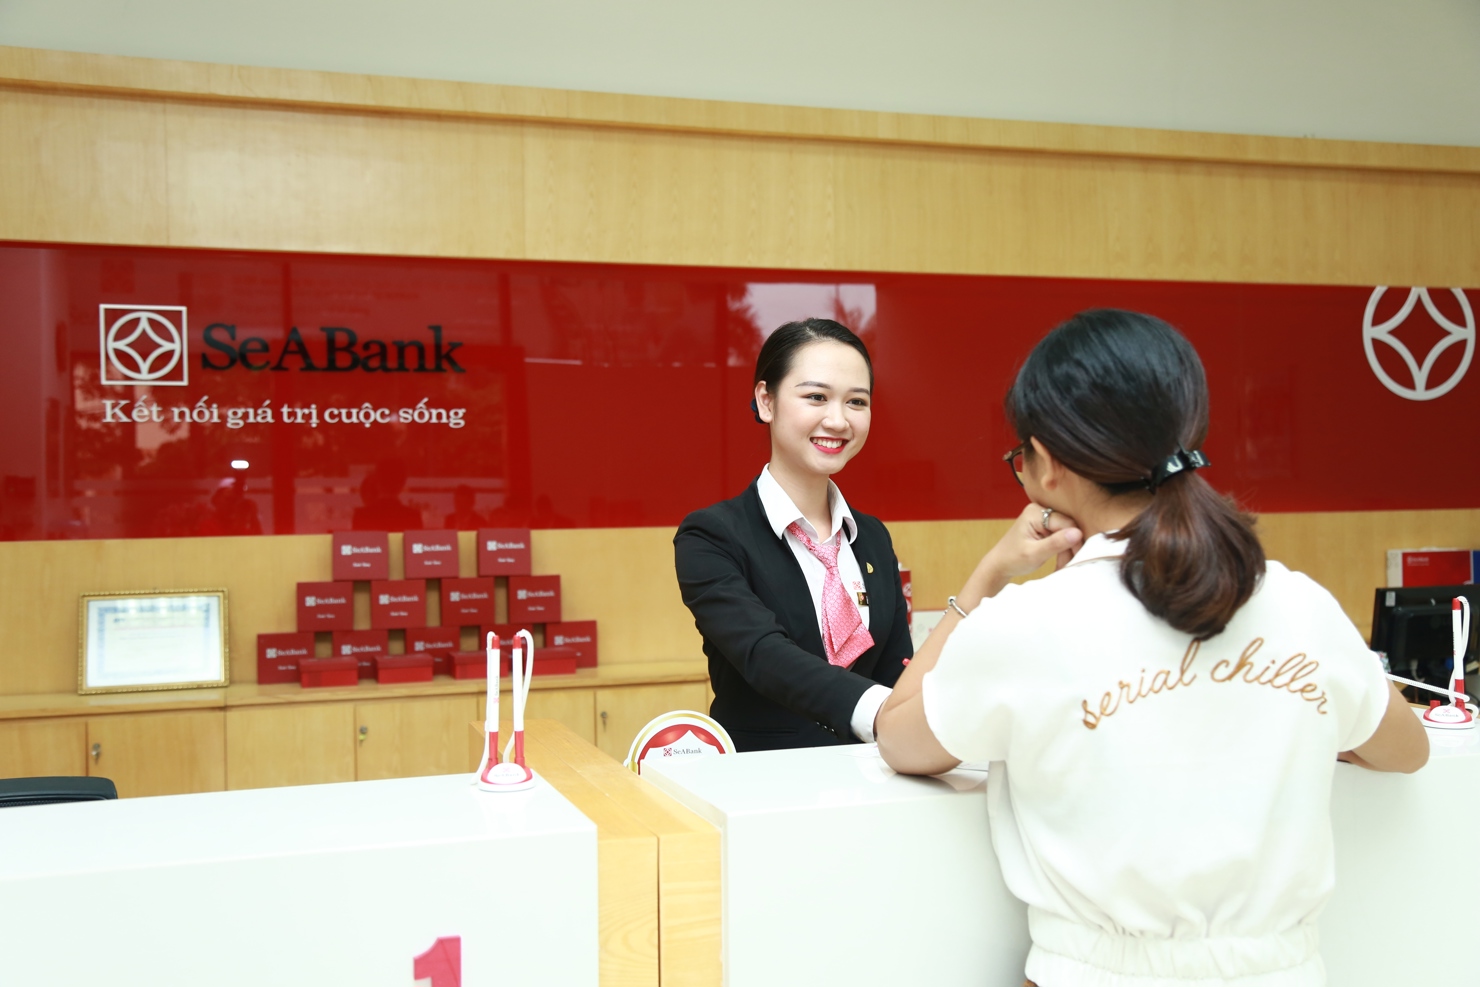 Kết thúc 9 tháng đầu năm 2019, SeABank đã hoàn thành việc tăng vốn điều lệ lên 9.369 tỷ đồng.